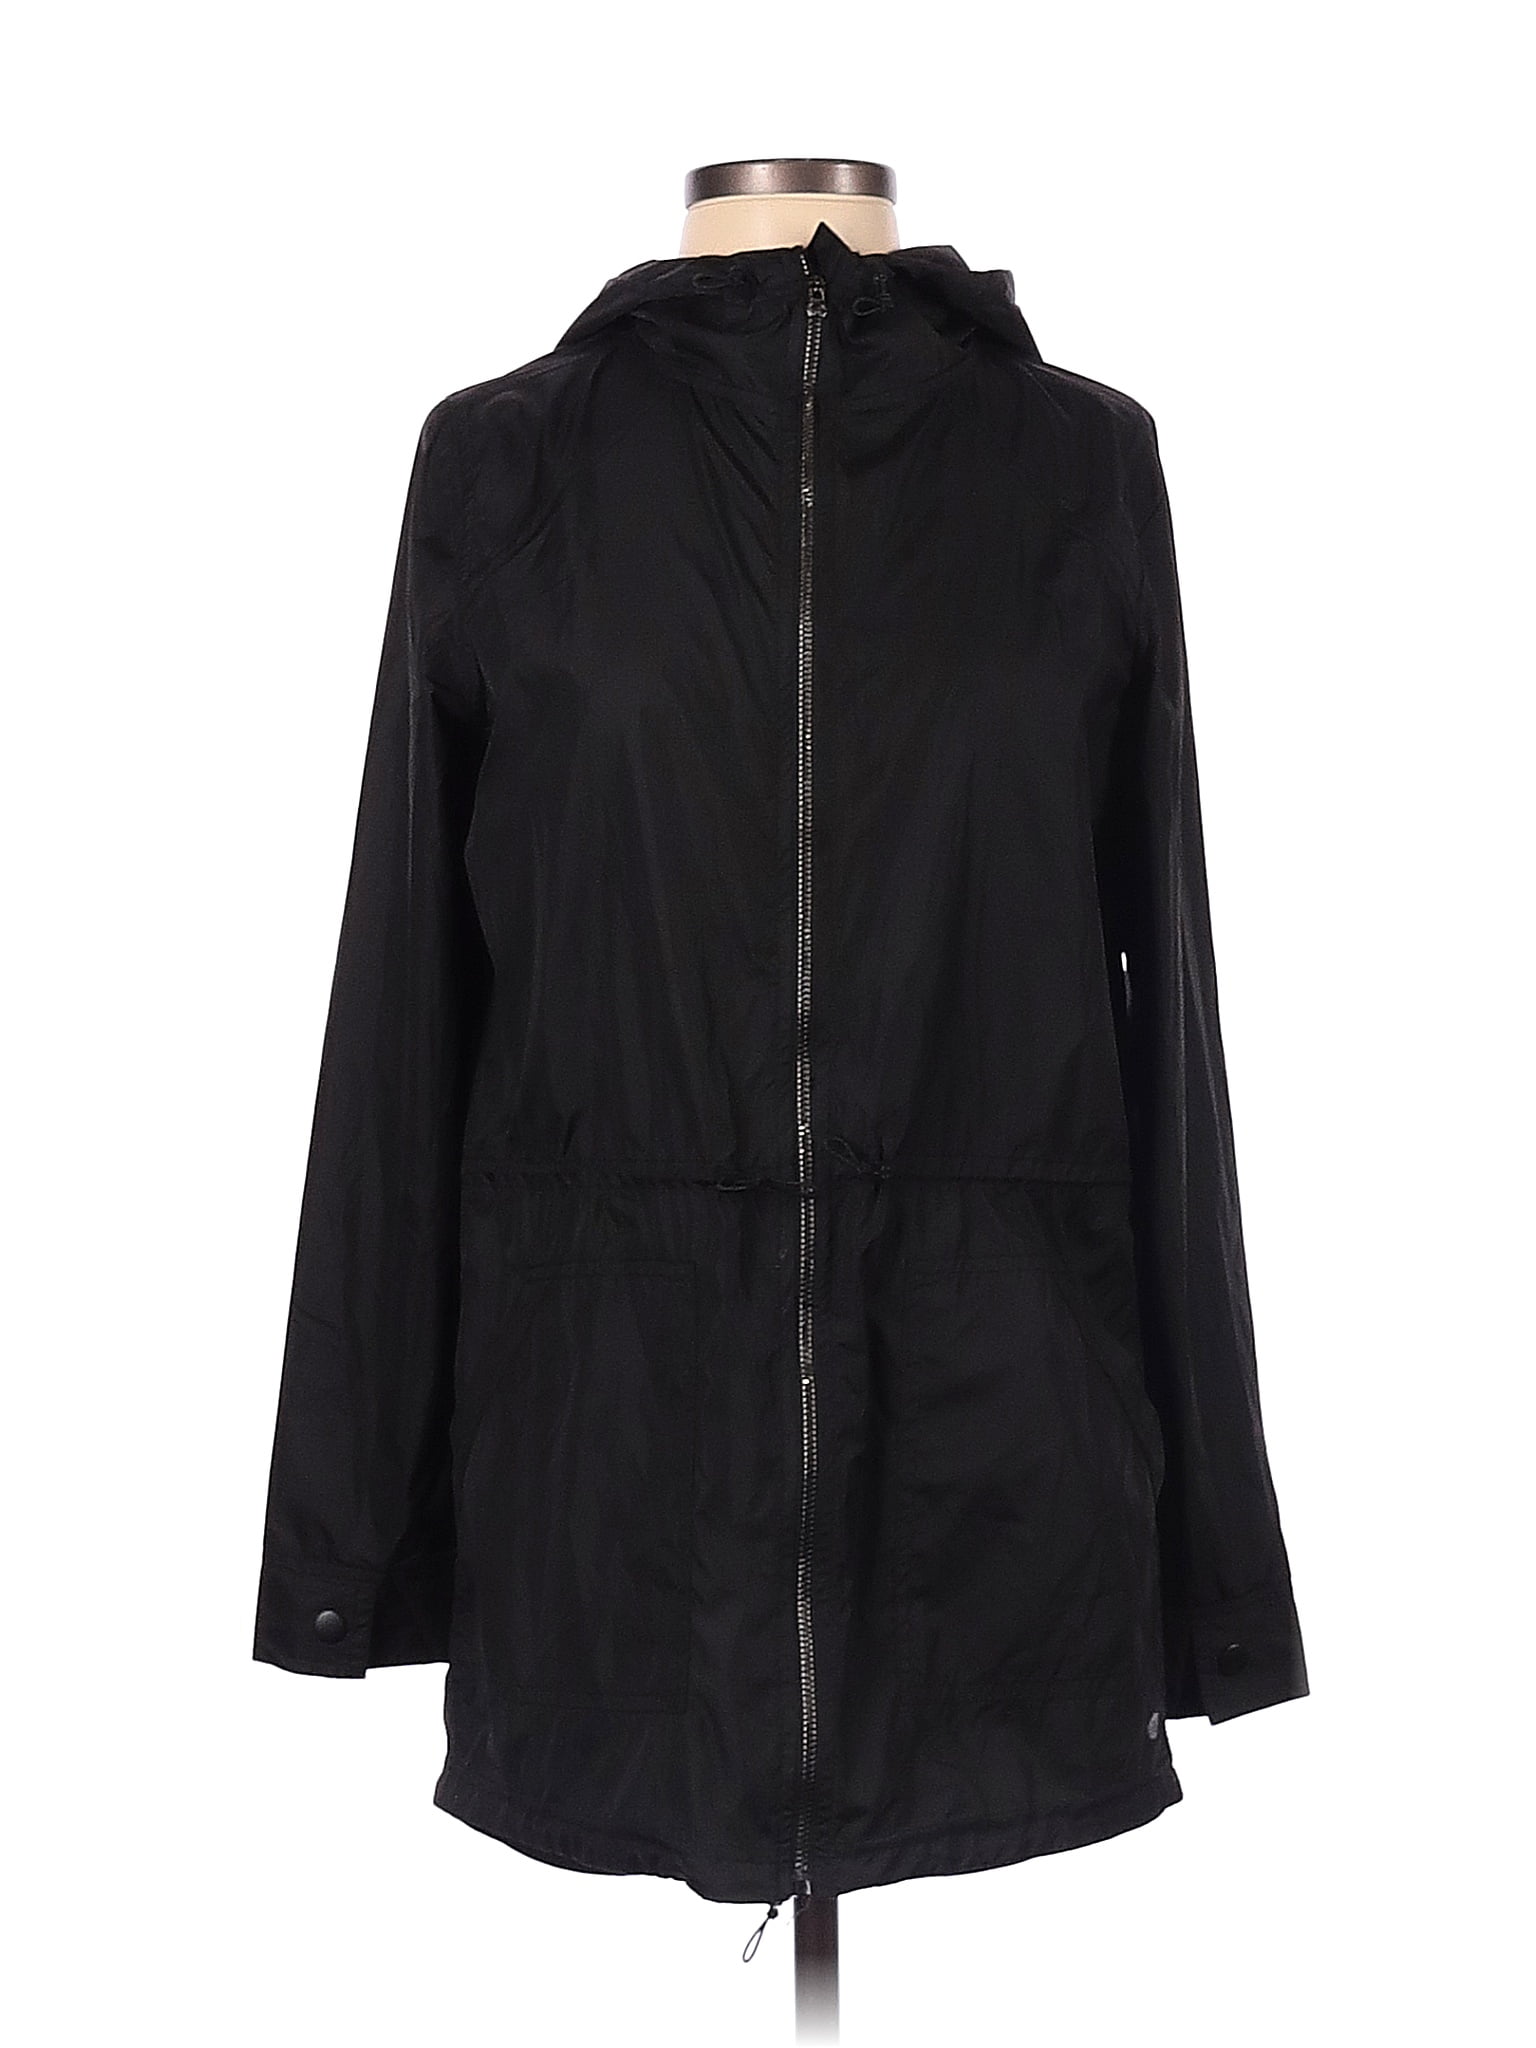 Apana Solid Black Jacket Size S - 65% off | thredUP